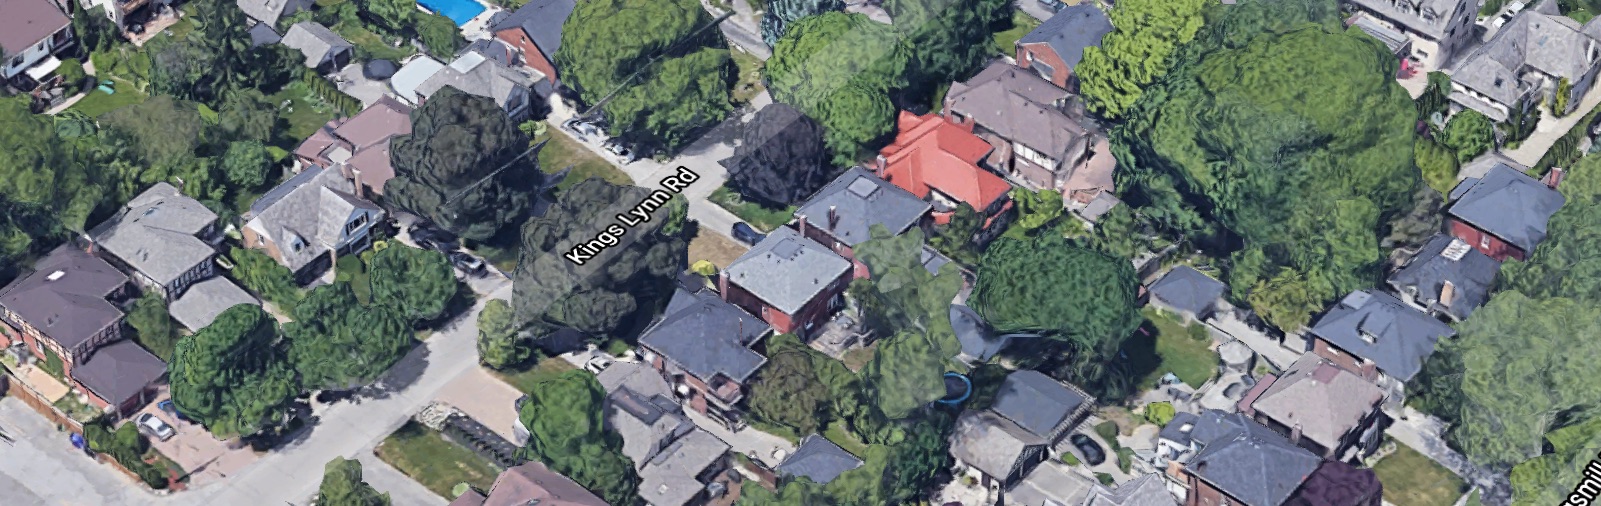 Screenshot of neighbourhood from Google Maps.